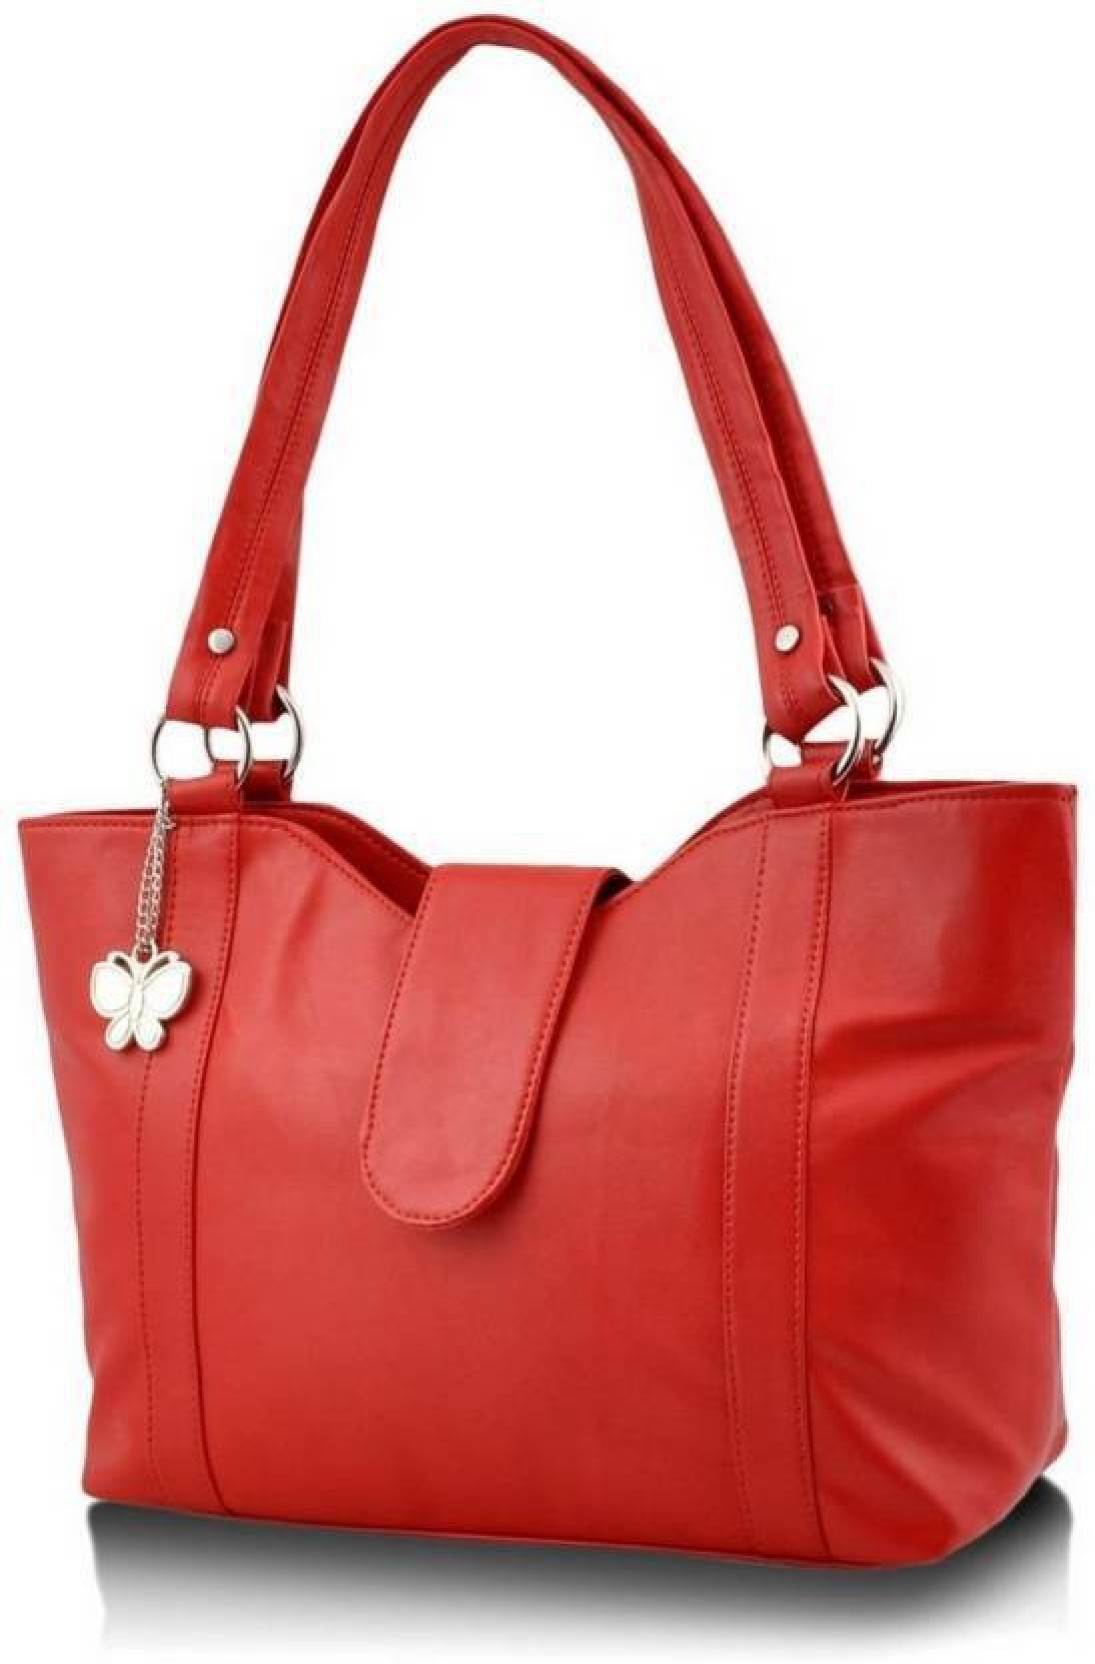 Buy Butterflies Hand-held Bag Red Online @ Best Price in India | 0